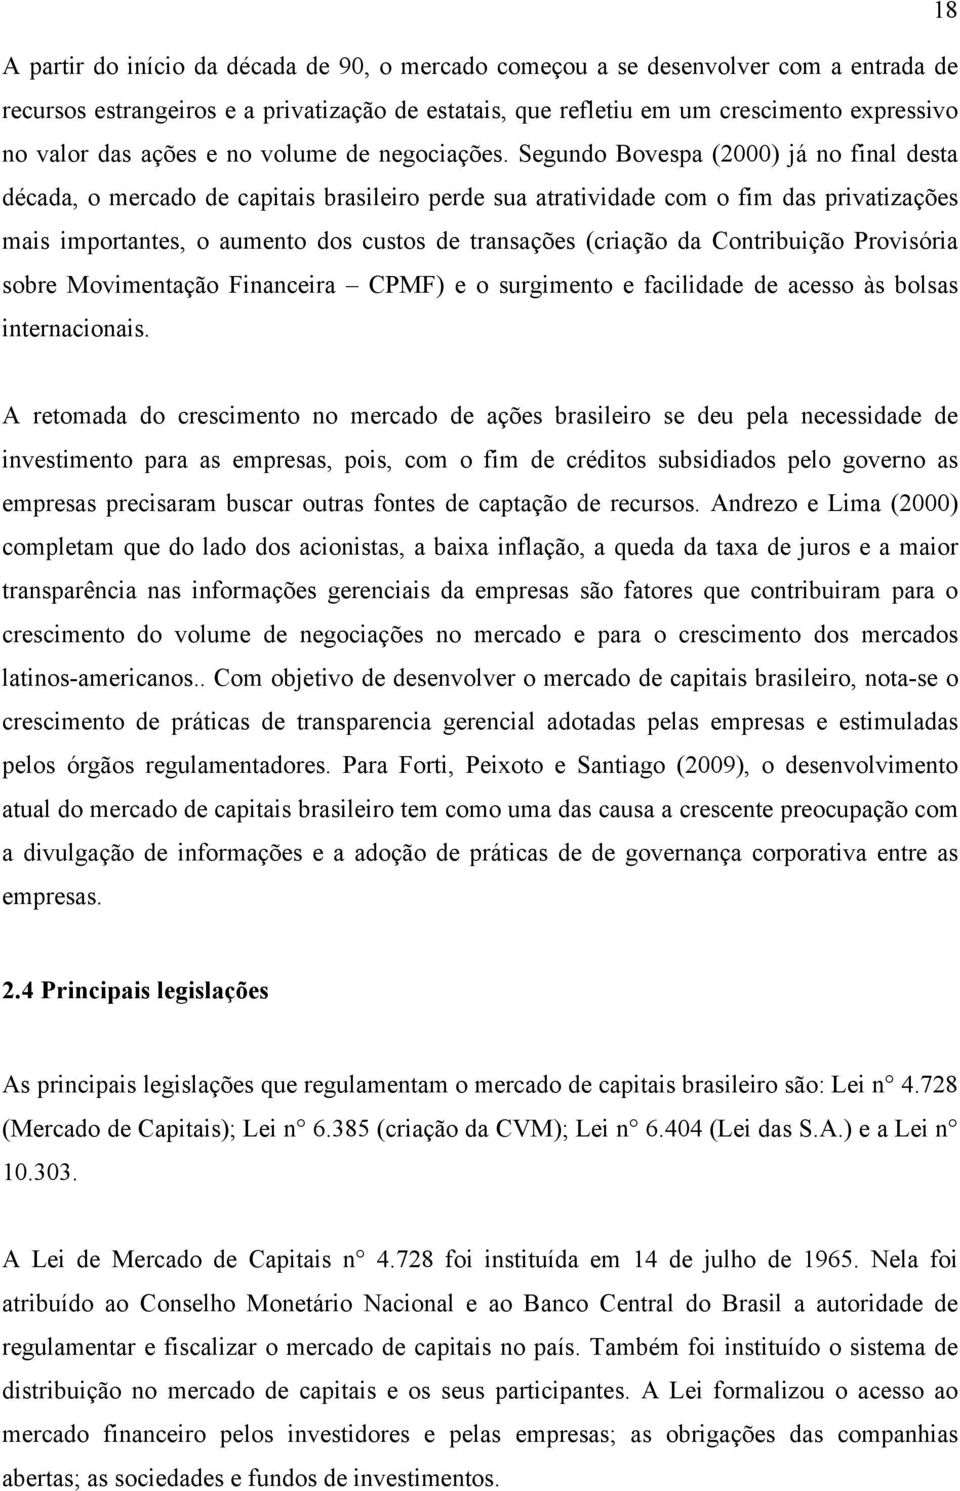 Segundo Bovespa (2000) já no final desta década, o mercado de capitais brasileiro perde sua atratividade com o fim das privatizações mais importantes, o aumento dos custos de transações (criação da